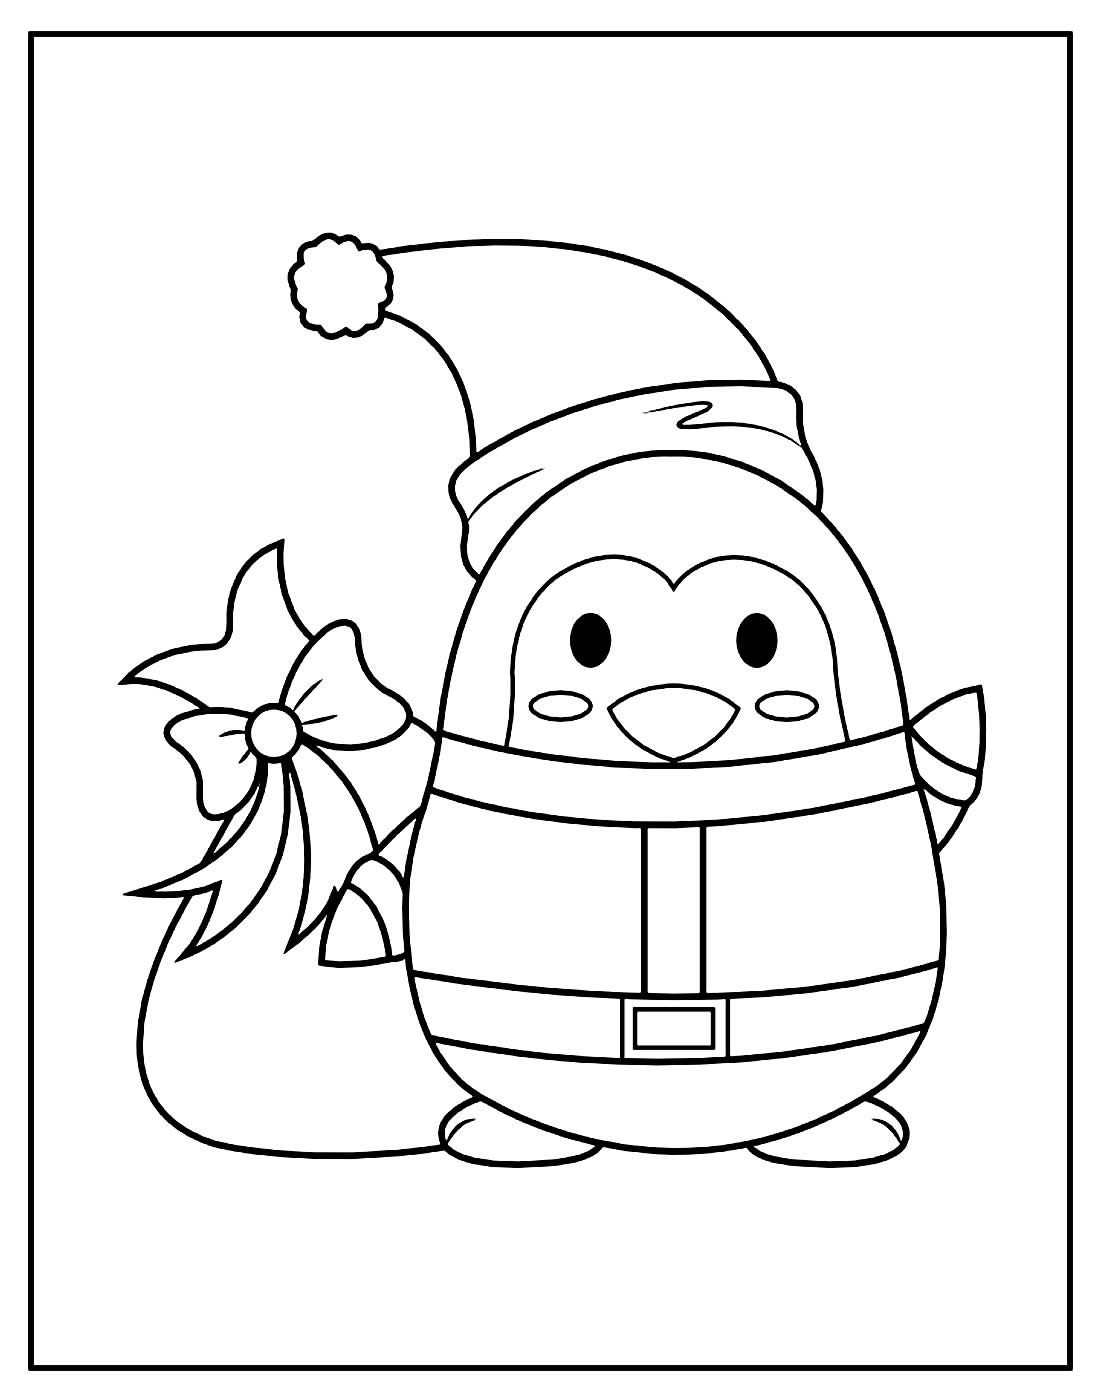 Desenho para colorir de Pinguim